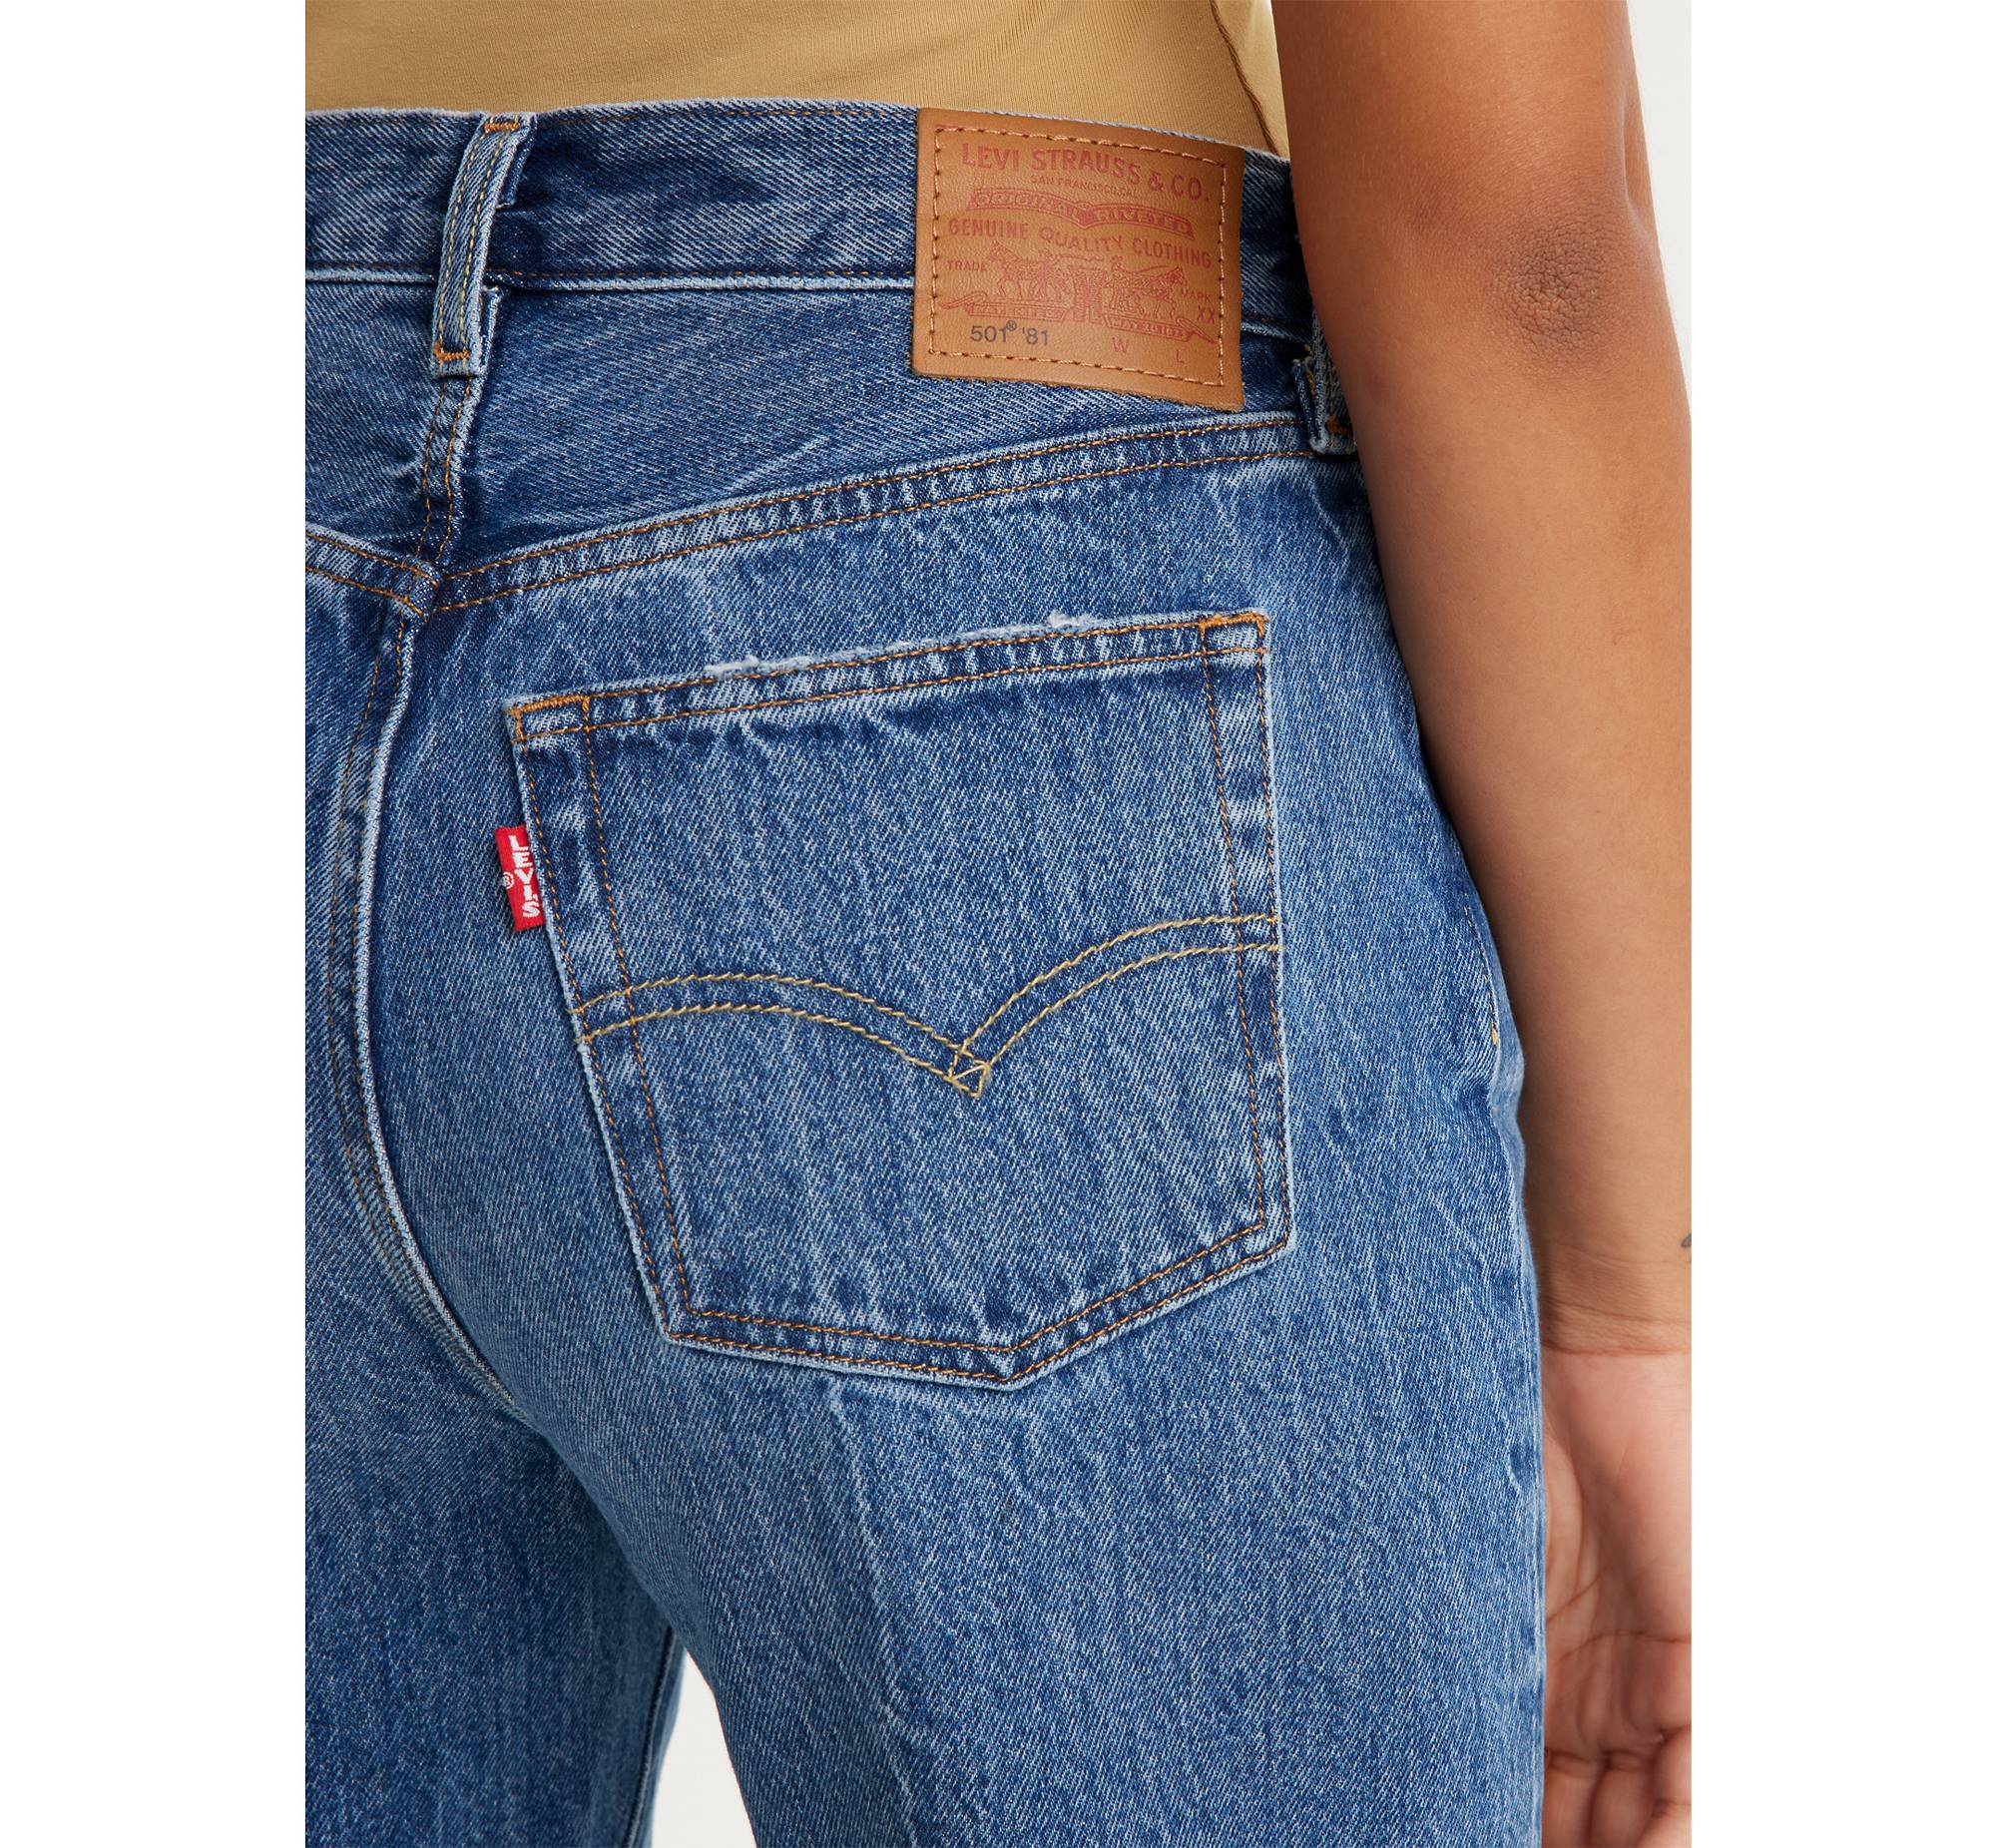 Bermad afeitado Calificación 501® '81 Women's Jeans - Medium Wash | Levi's® US